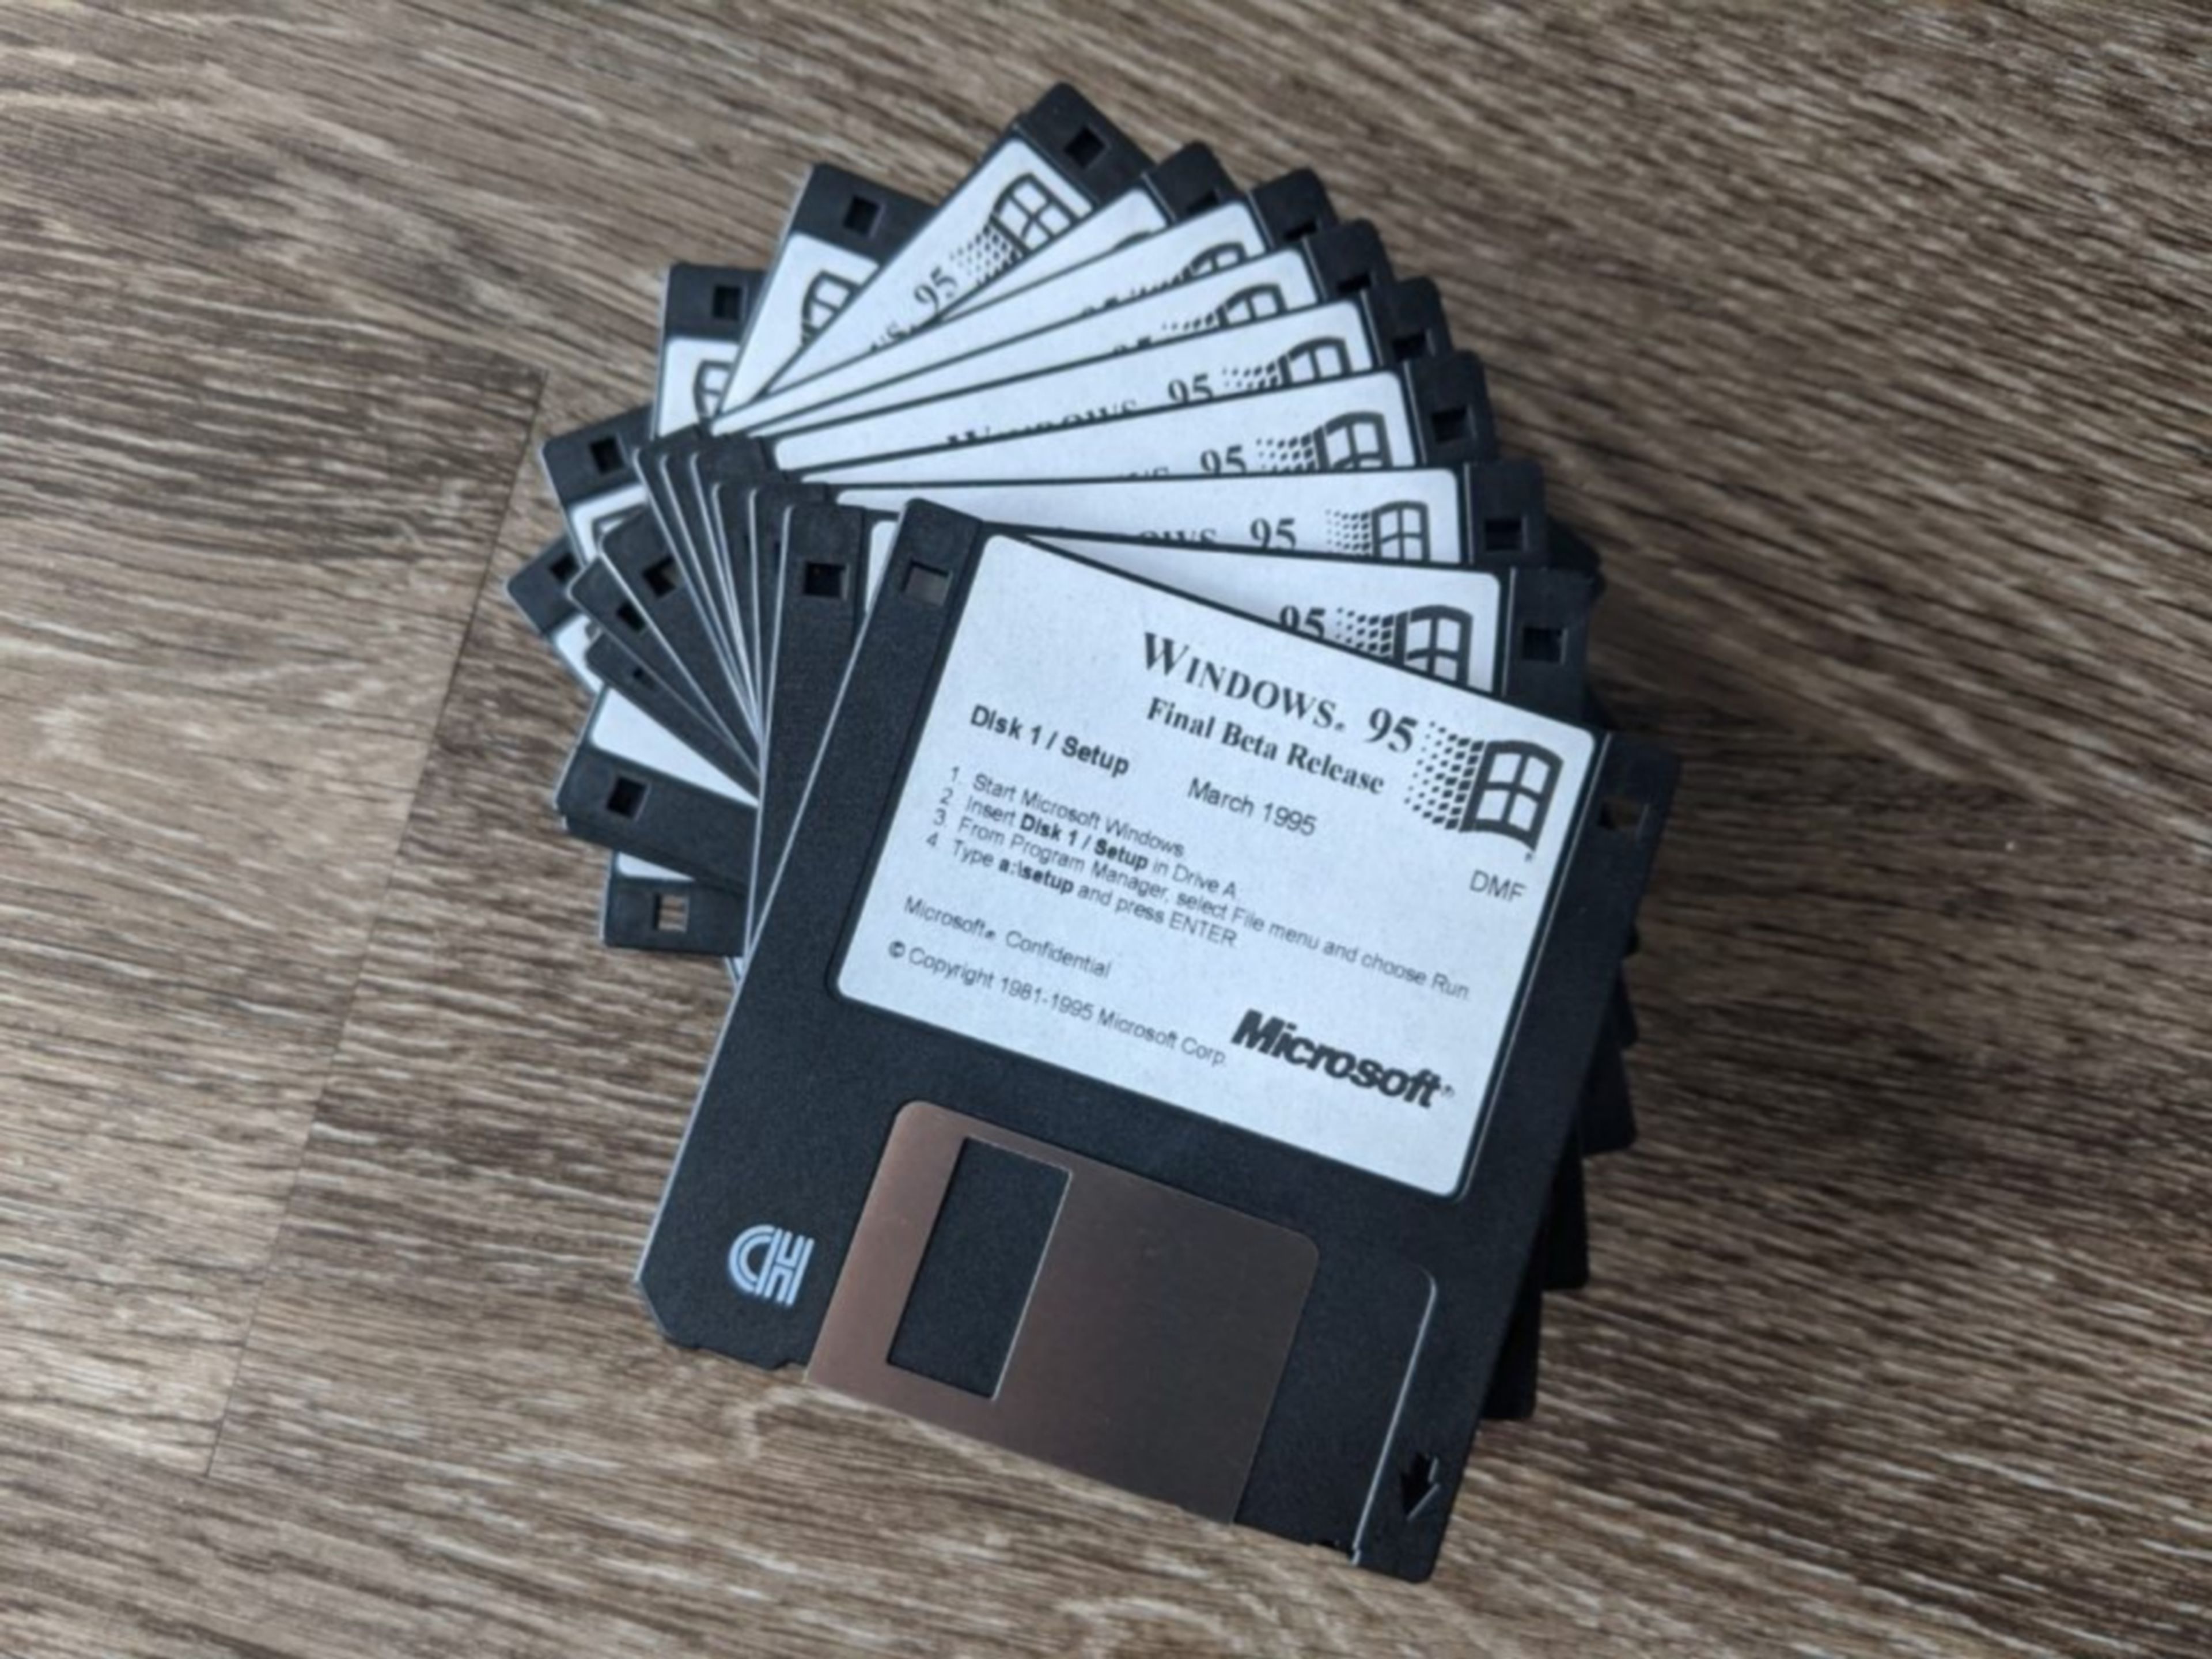 Windows 95 cumple 25 años: el inicio de la era de Internet